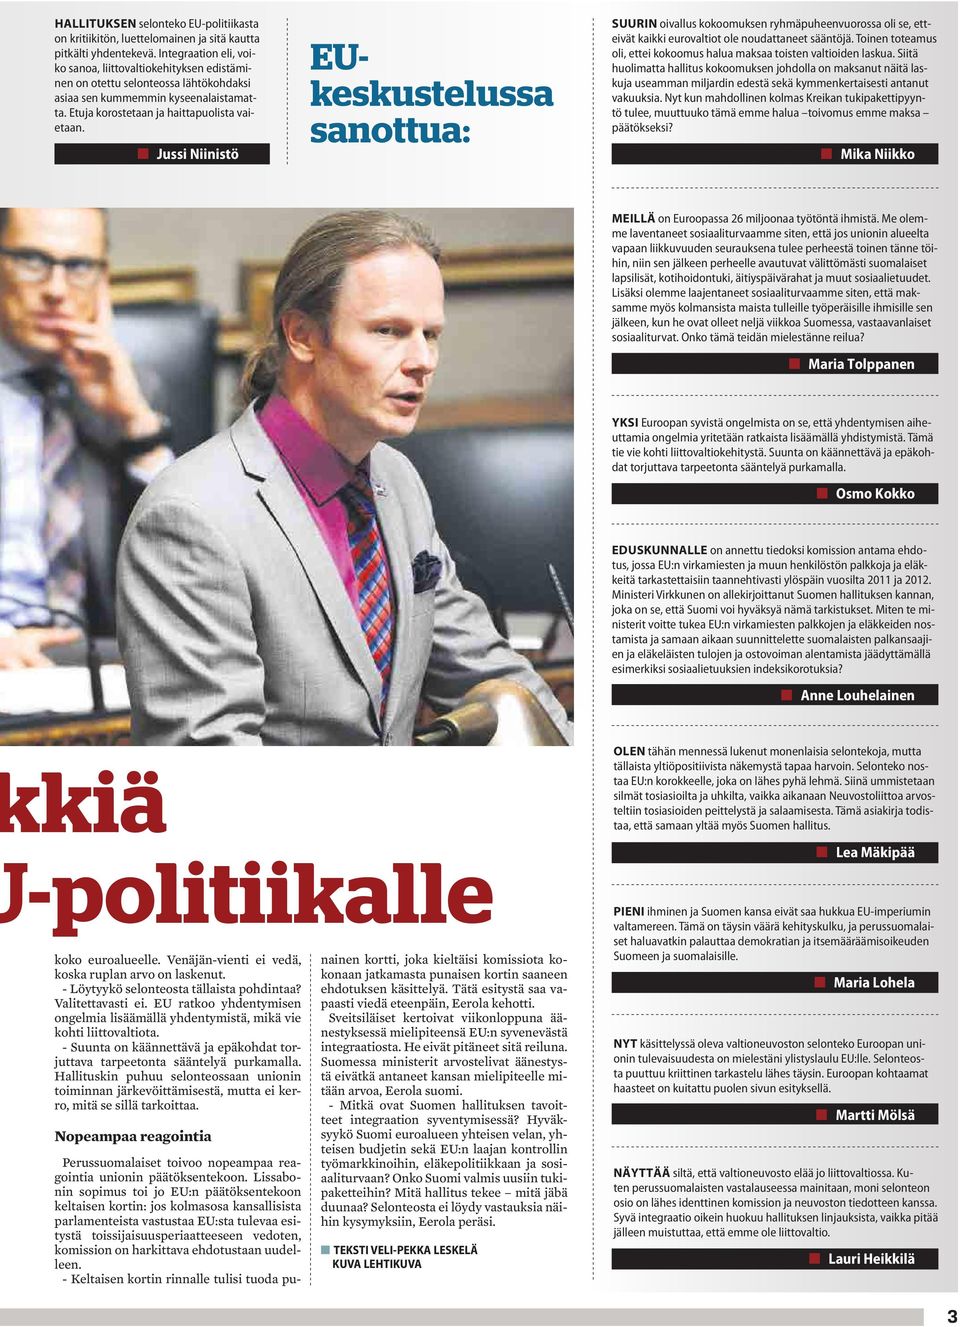 Jussi Niinistö EUkeskustelussa sanottua: SUURIN oivallus kokoomuksen ryhmäpuheenvuorossa oli se, etteivät kaikki eurovaltiot ole noudattaneet sääntöjä.